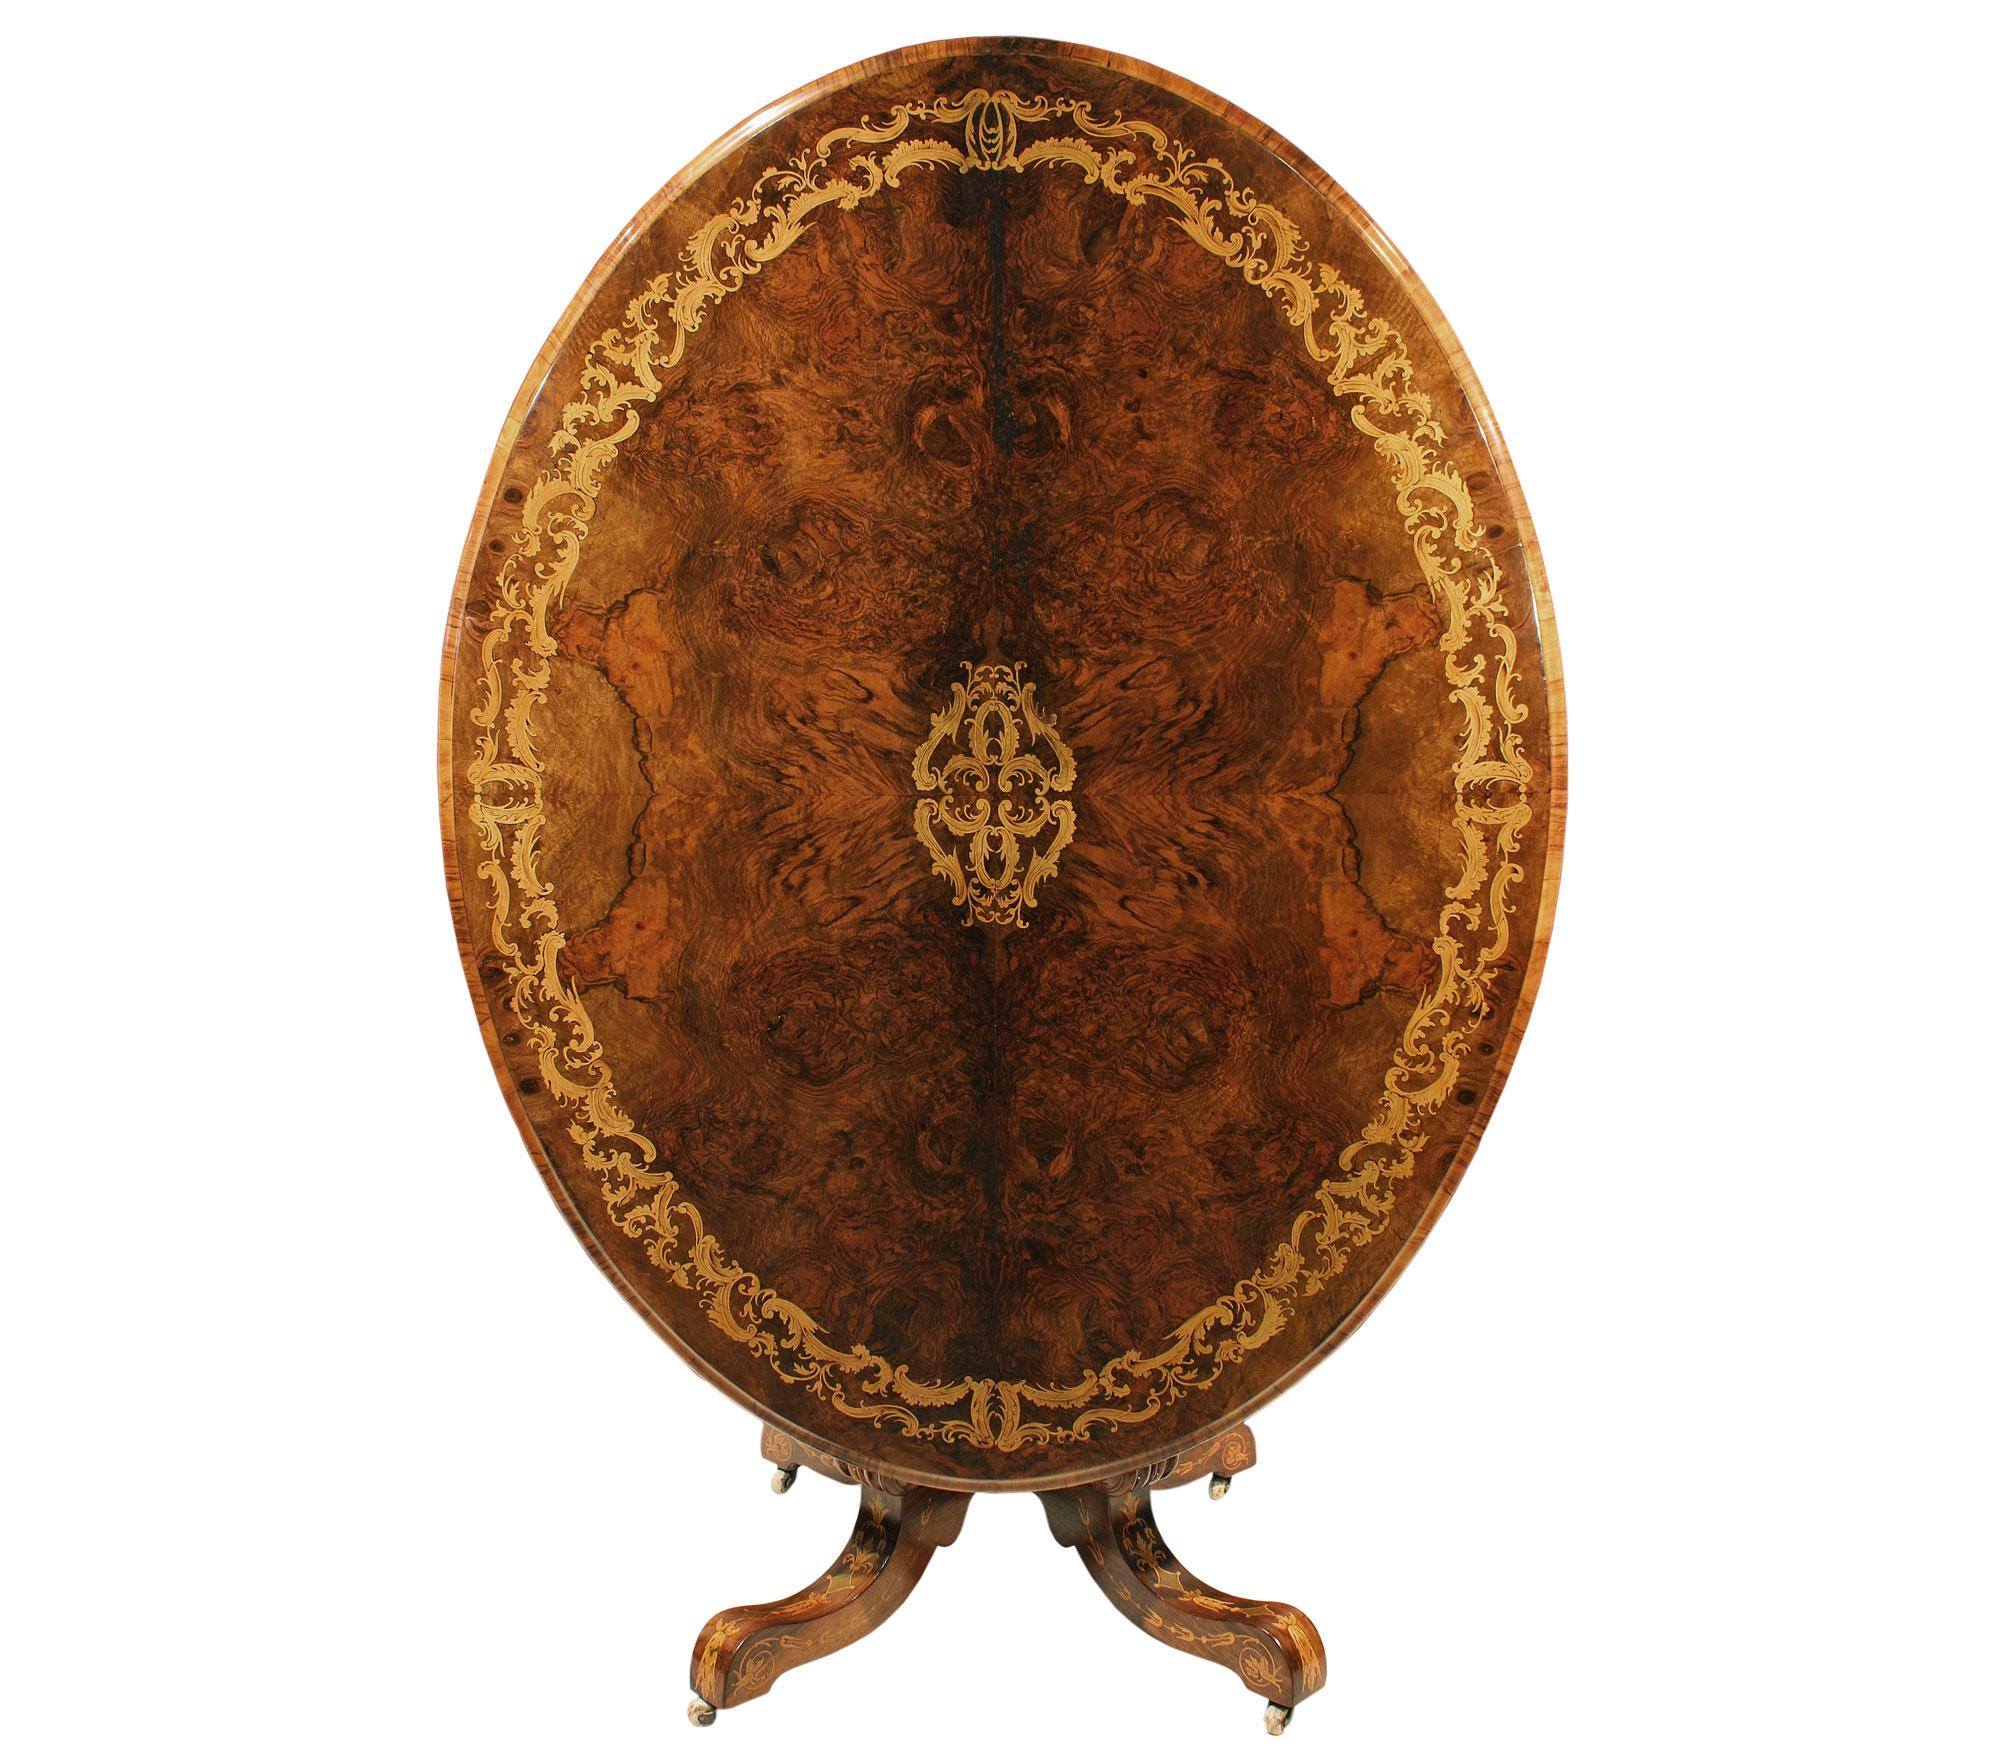 Ein sehr dekorativer und großformatiger englischer Kipptisch des 19. Jahrhunderts aus verschiedenen Nussbaum- und Exotenhölzern. Der Tisch wird von den originalen Porzellanrollen angehoben und hat vier C-förmige Stützen, die durch eine reich